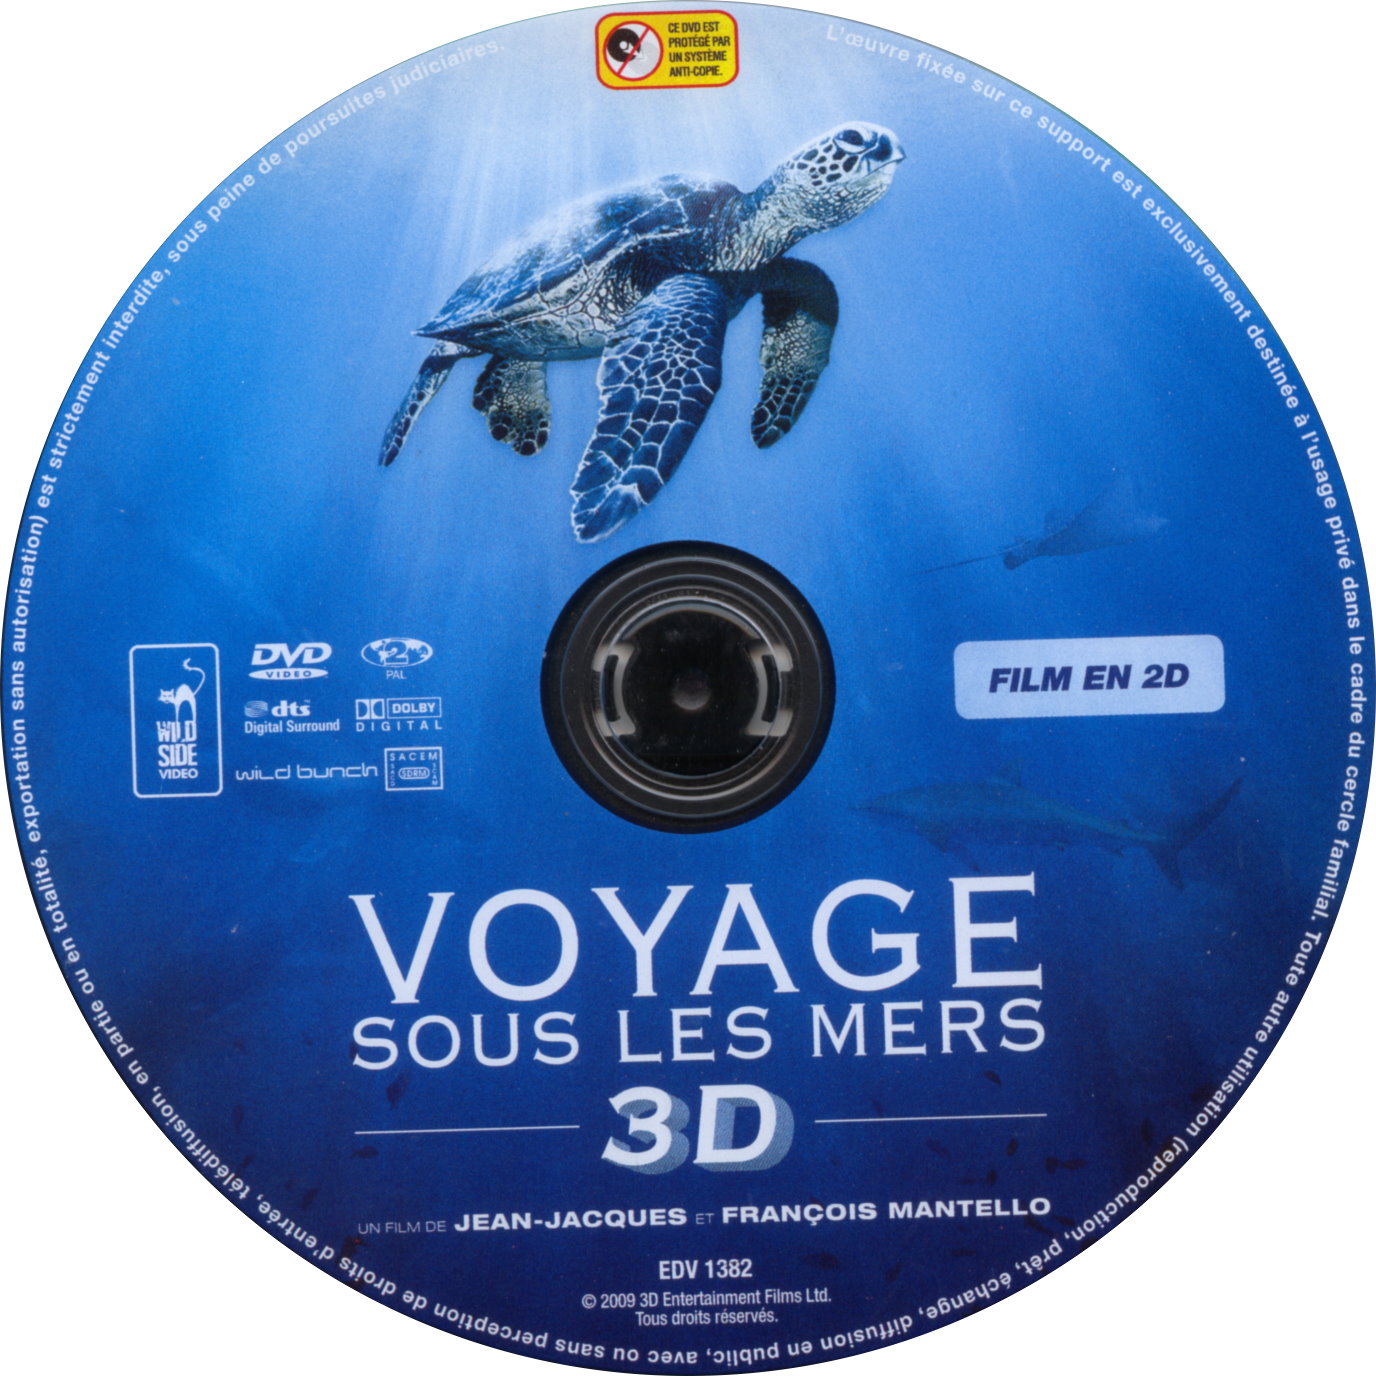 Voyage sous les mers 3D (DISC 2D)